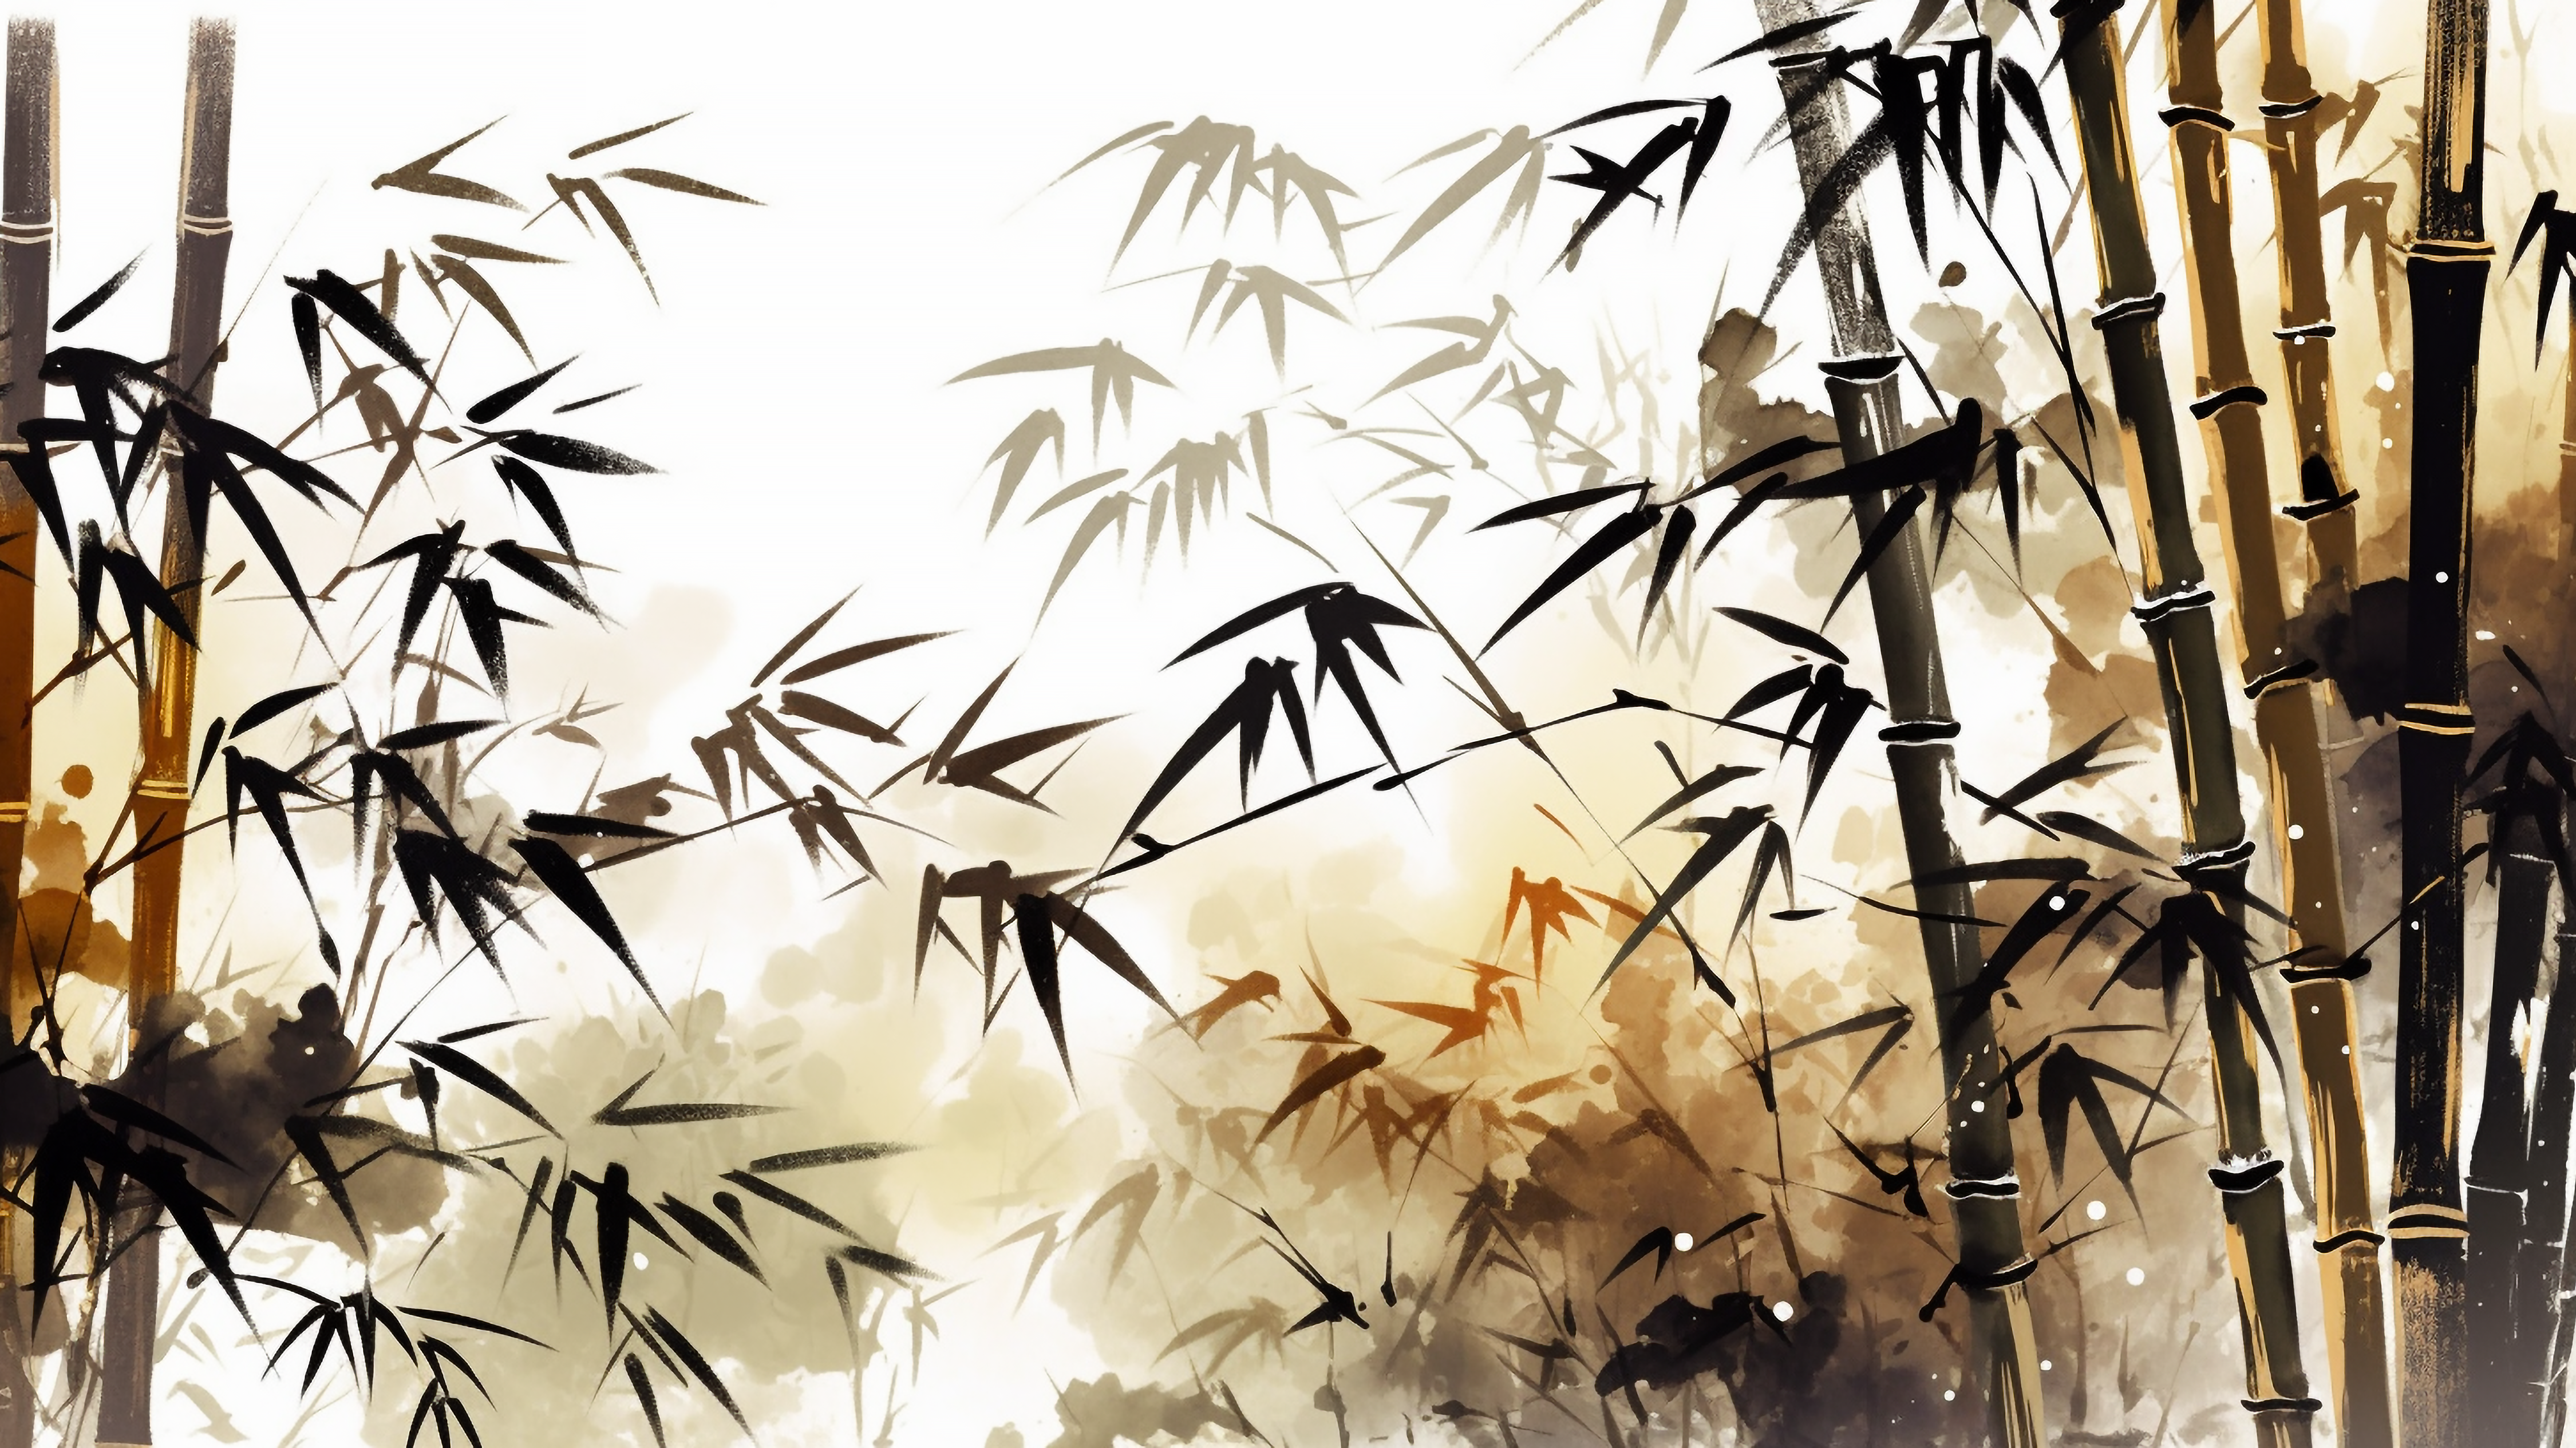 竹子插画背景图片